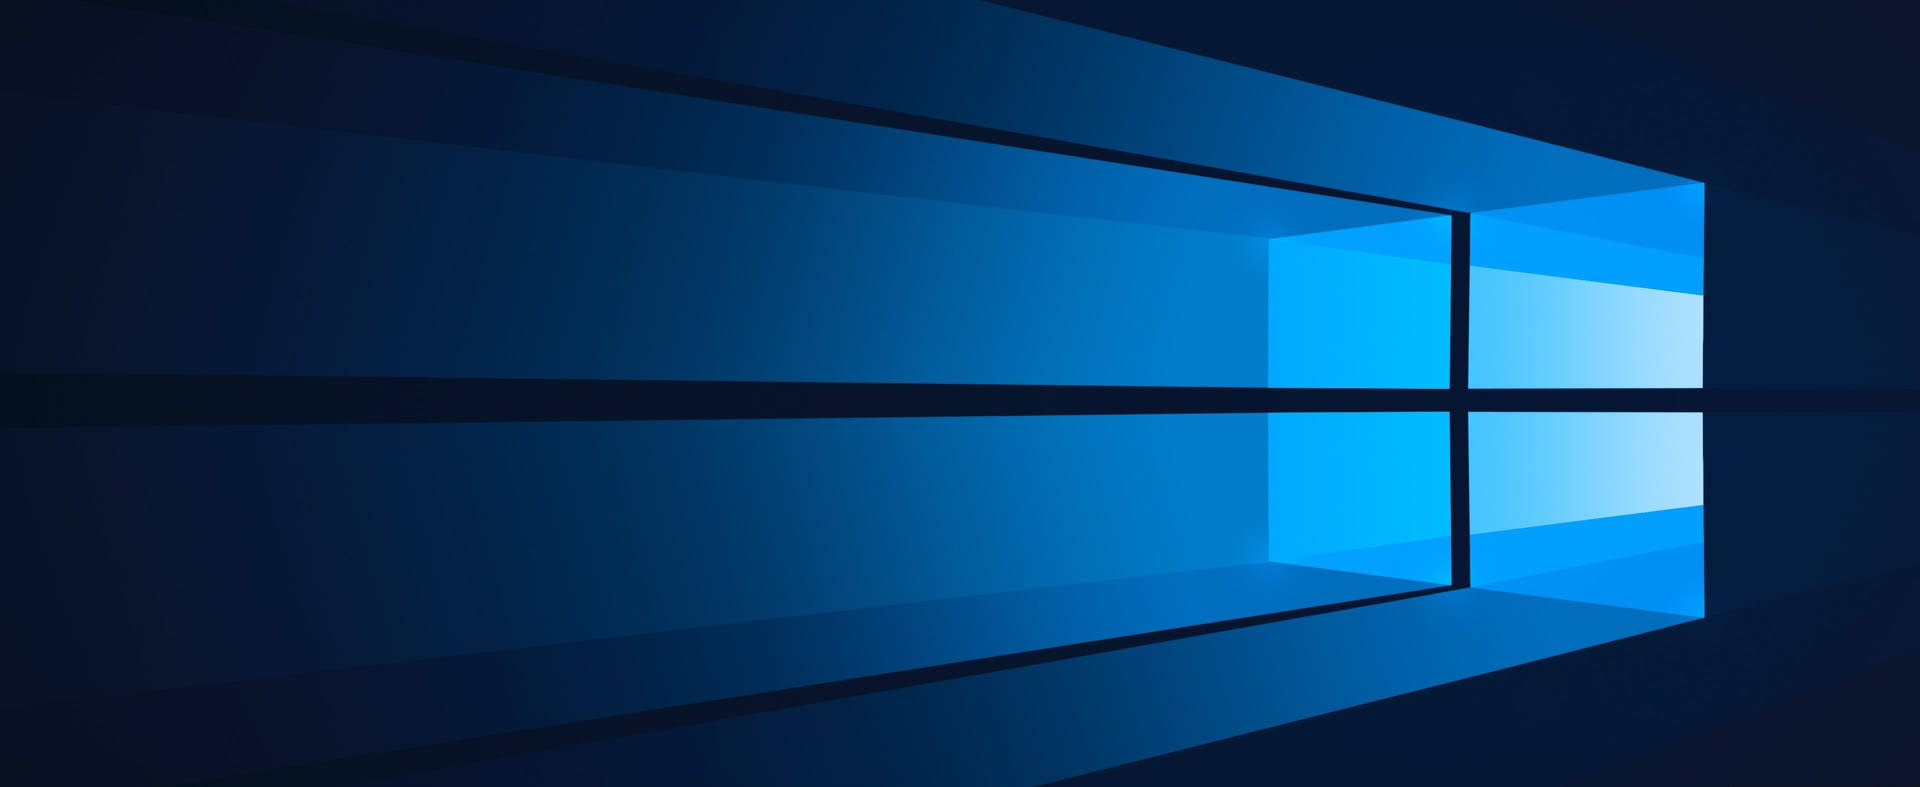 Windows10 Logo Mit Blauem Licht. Wallpaper